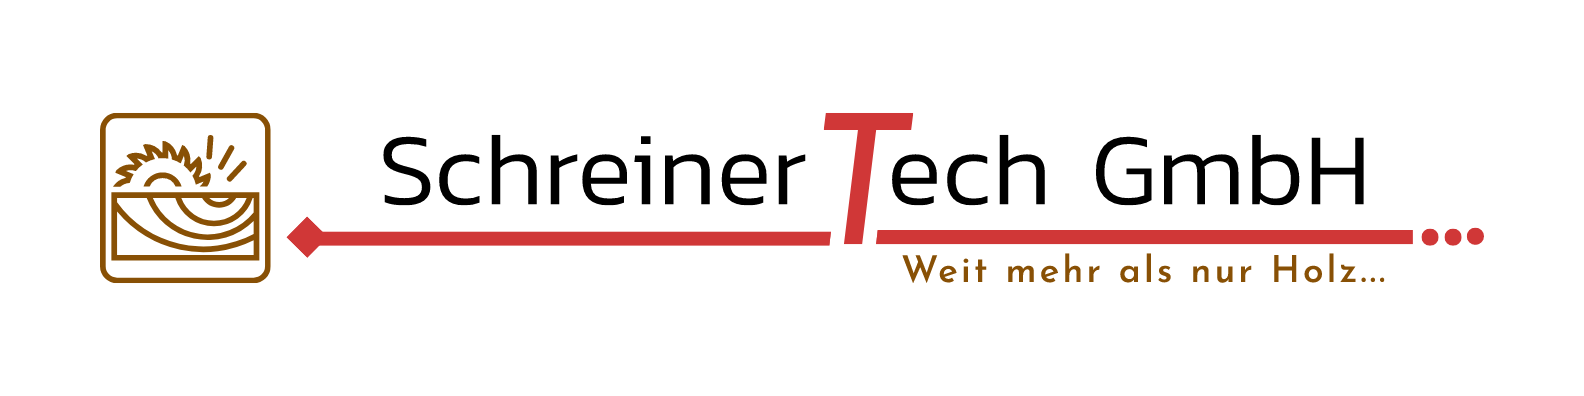 Schreiner-Tech GmbH